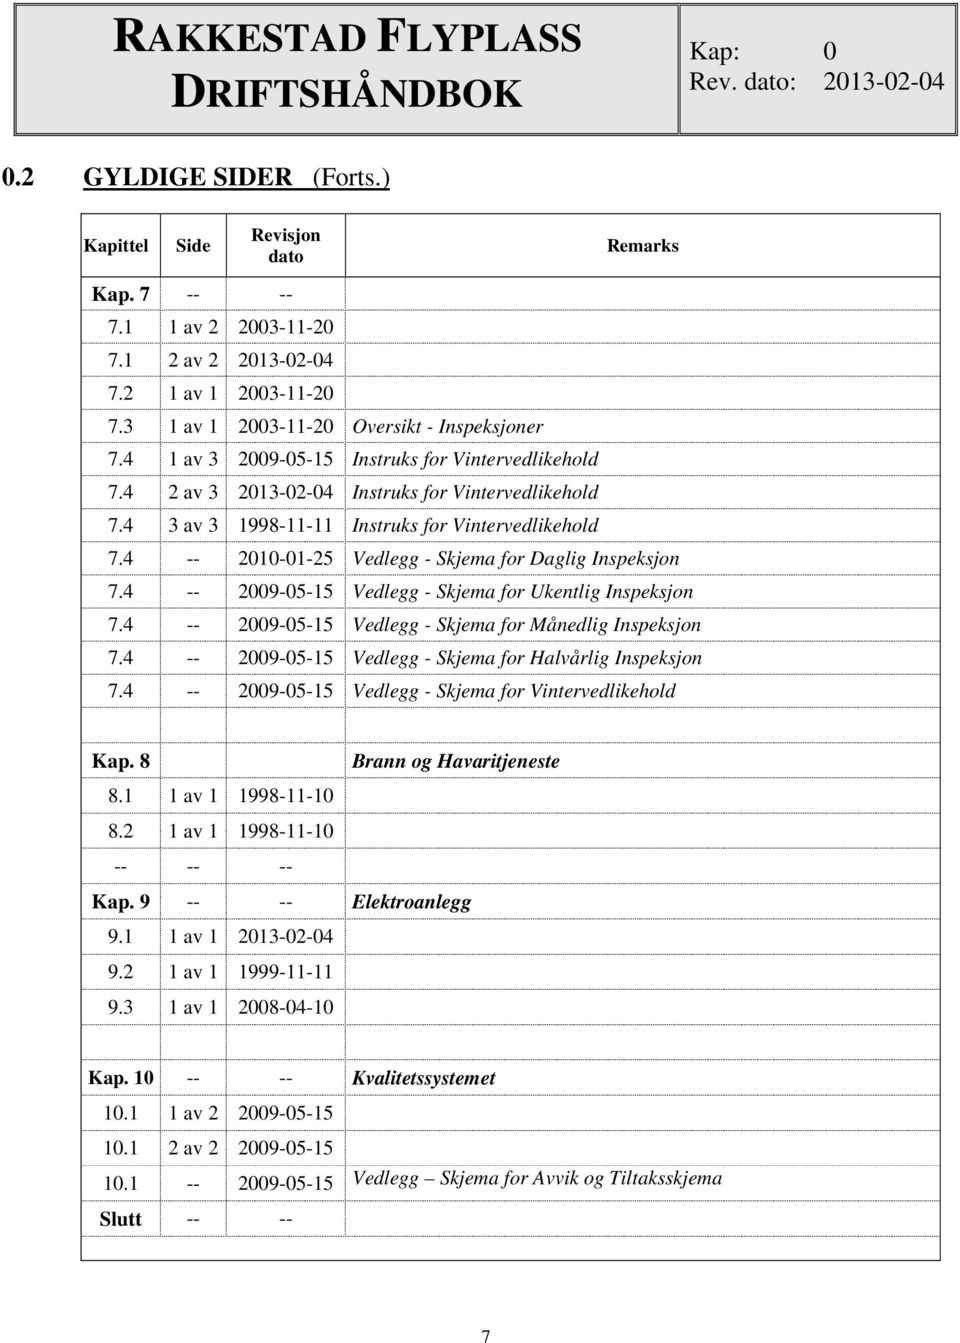 4 3 av 3 1998-11-11 Instruks for Vintervedlikehold 7.4 -- 2010-01-25 Vedlegg - Skjema for Daglig Inspeksjon 7.4 -- 2009-05-15 Vedlegg - Skjema for Ukentlig Inspeksjon 7.